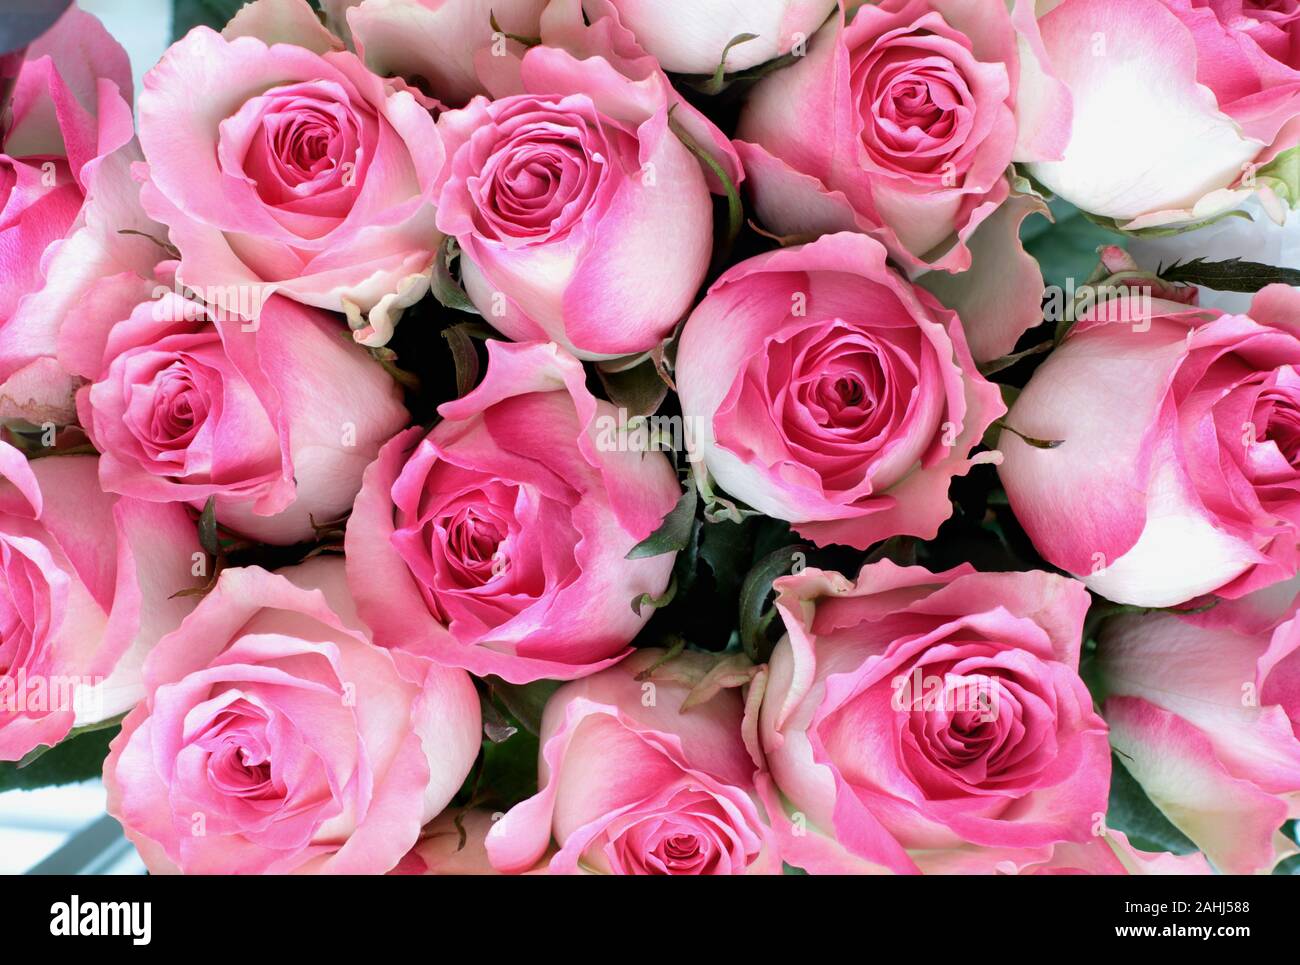 Schöne rosa und weiße Rose Blume Hintergrund. Bild geschossen von der Ansicht von oben. Stockfoto